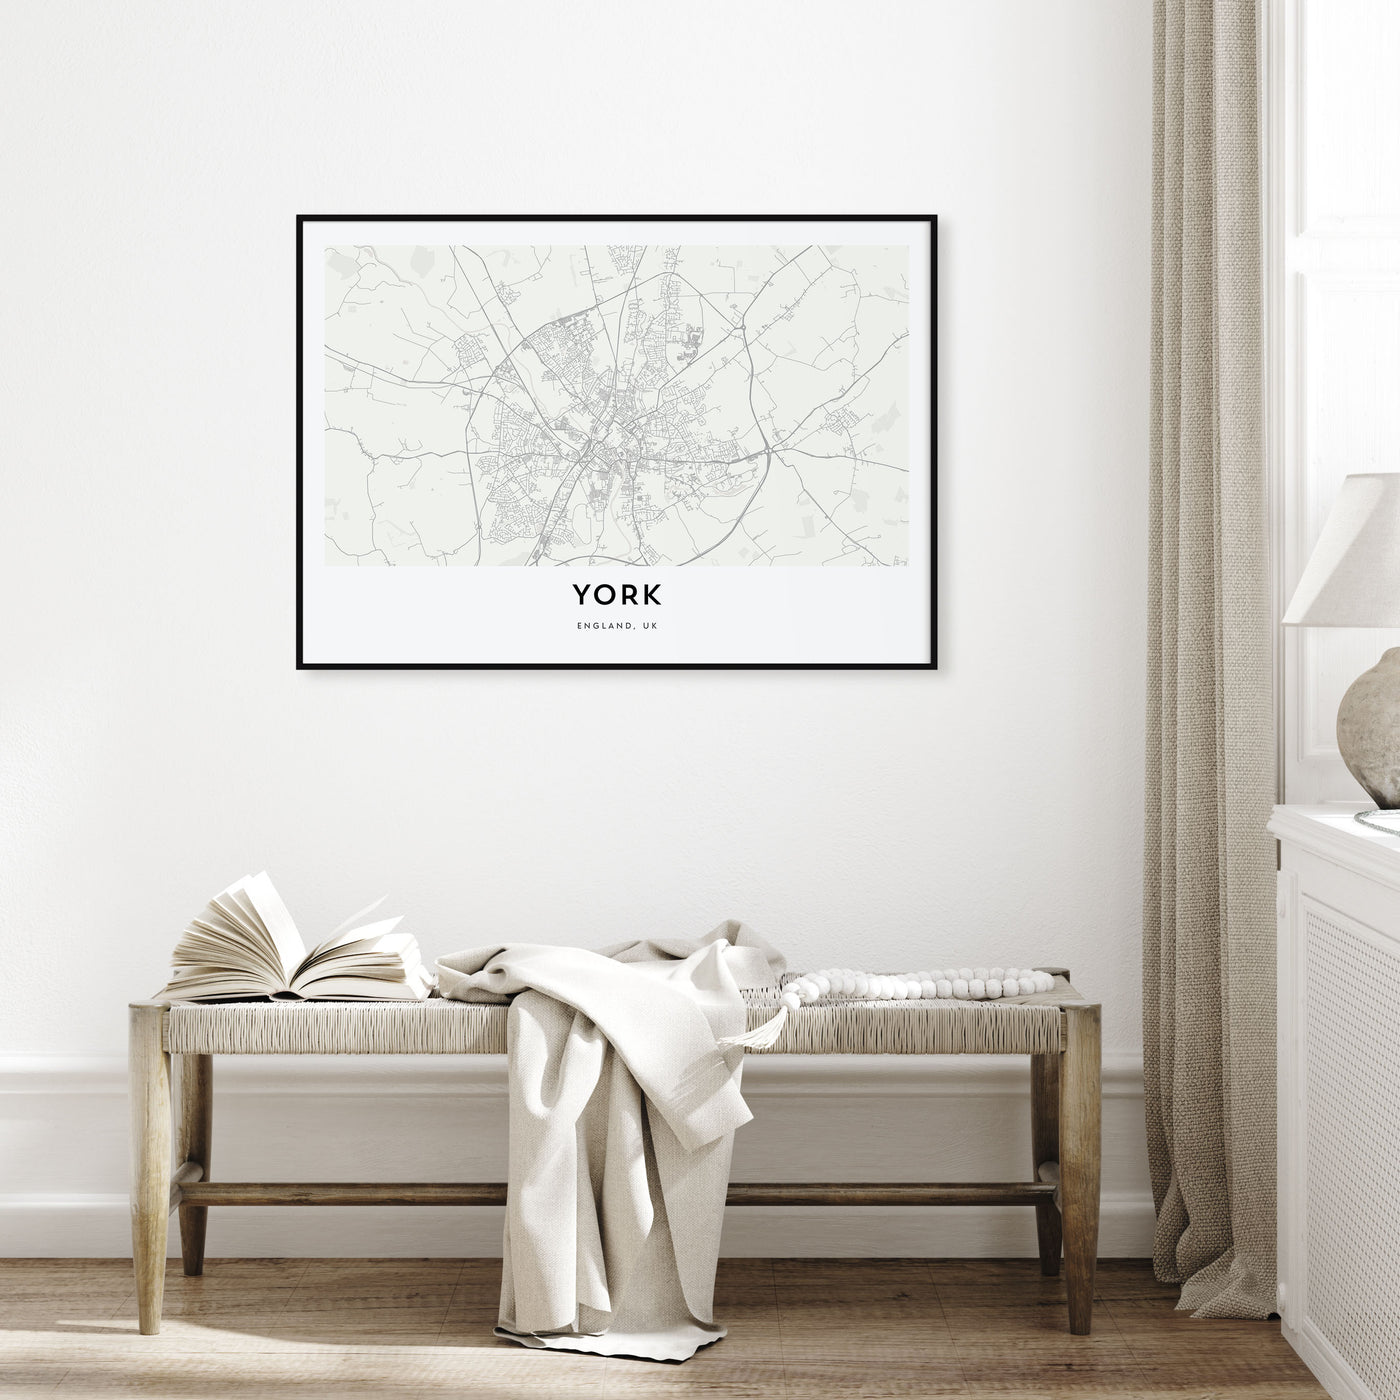 York, England Map Landscape Poster